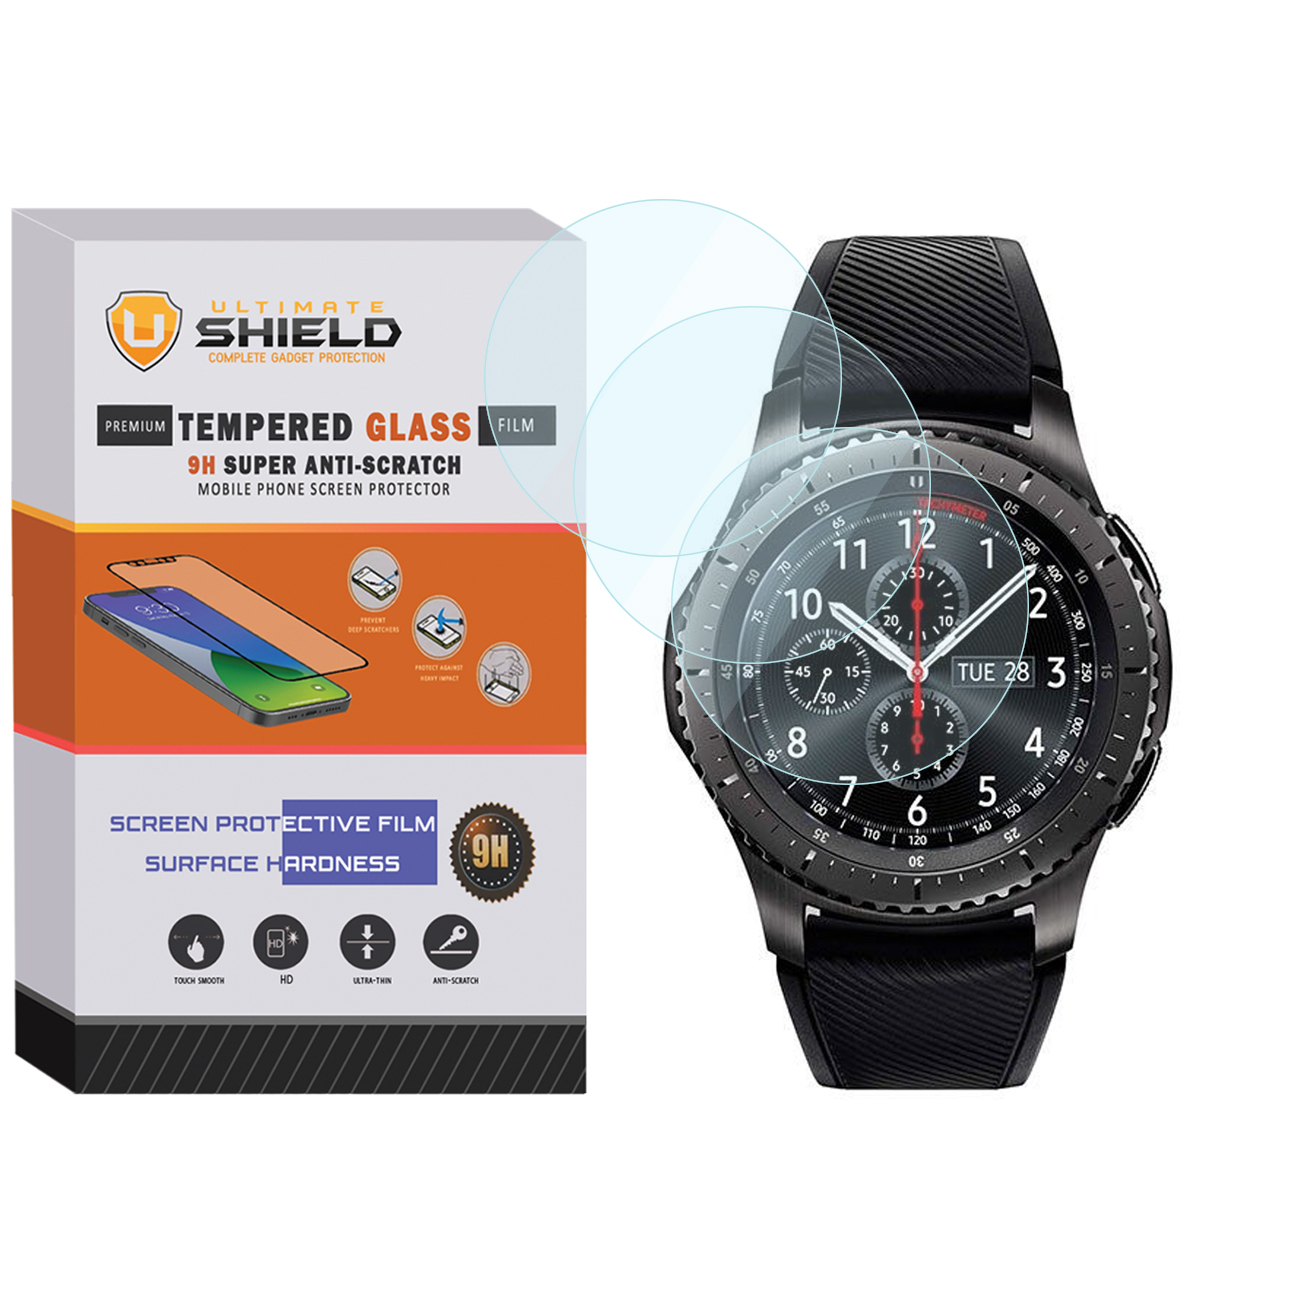 محافظ صفحه نمایش شیشه ای آلتیمیت شیلد مدل SH-UL مناسب برای ساعت هوشمند سامسونگ Galaxy Gear S3 بسته سه عددی